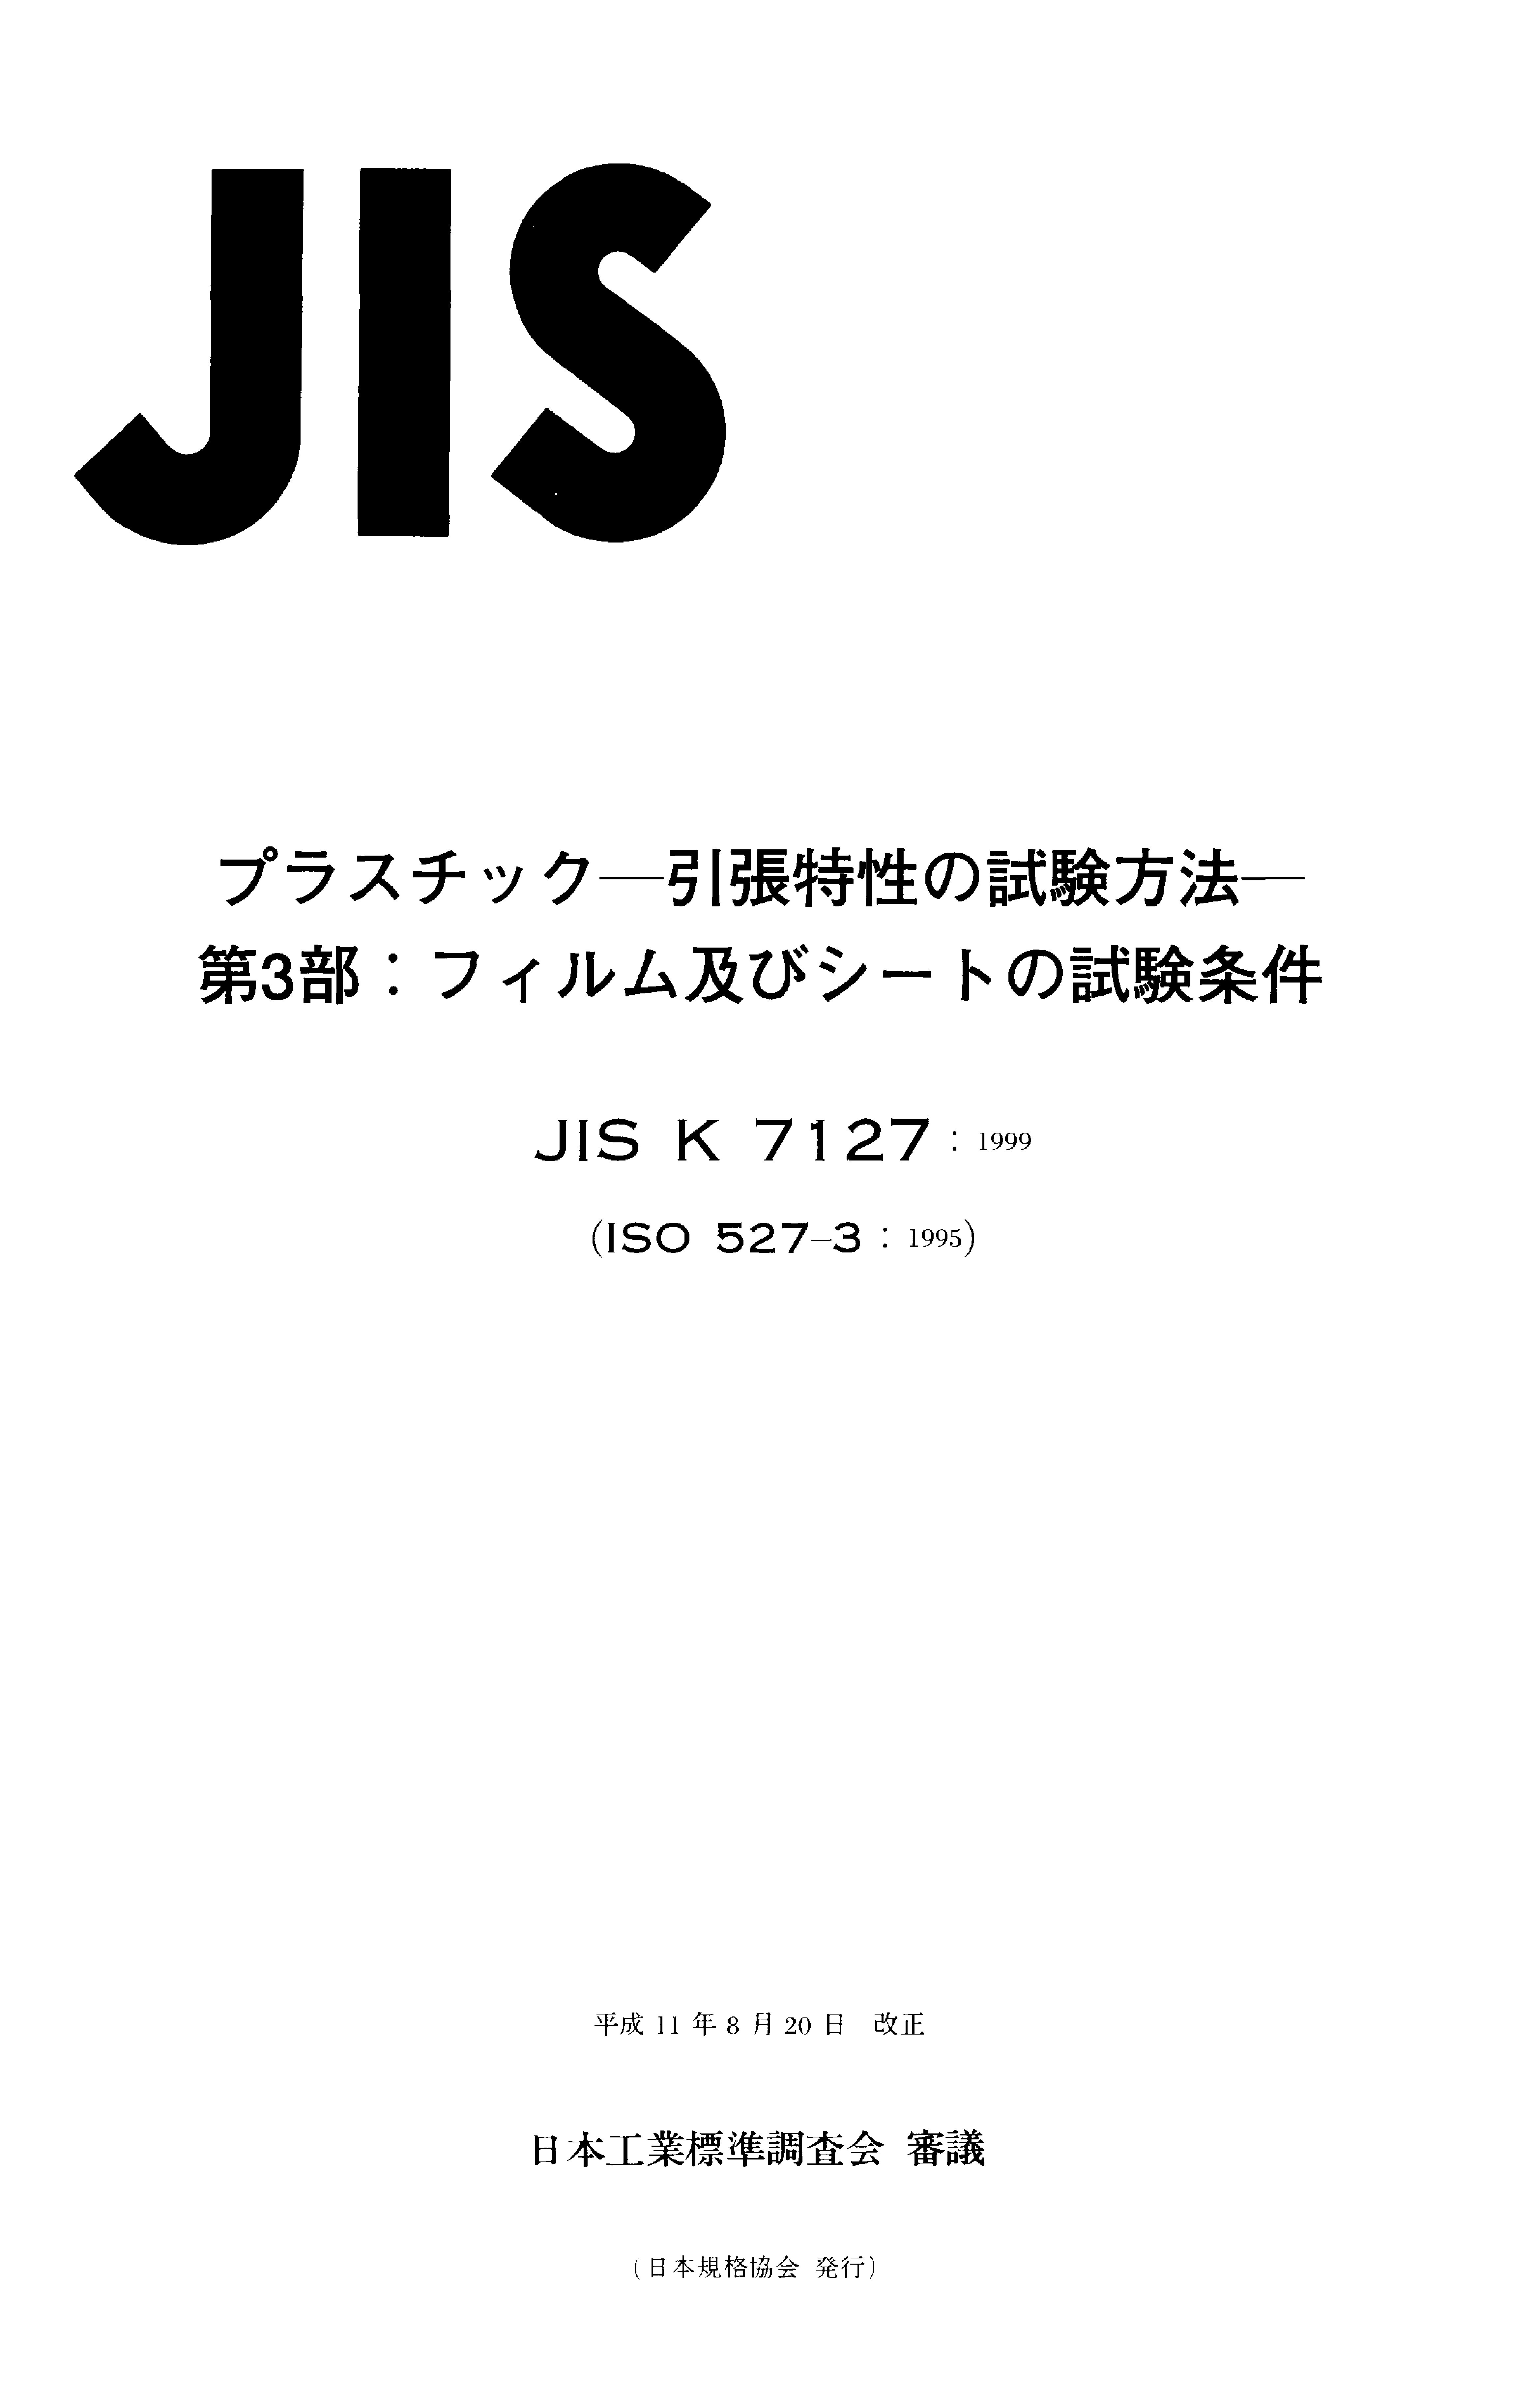 JIS K 7127:1999